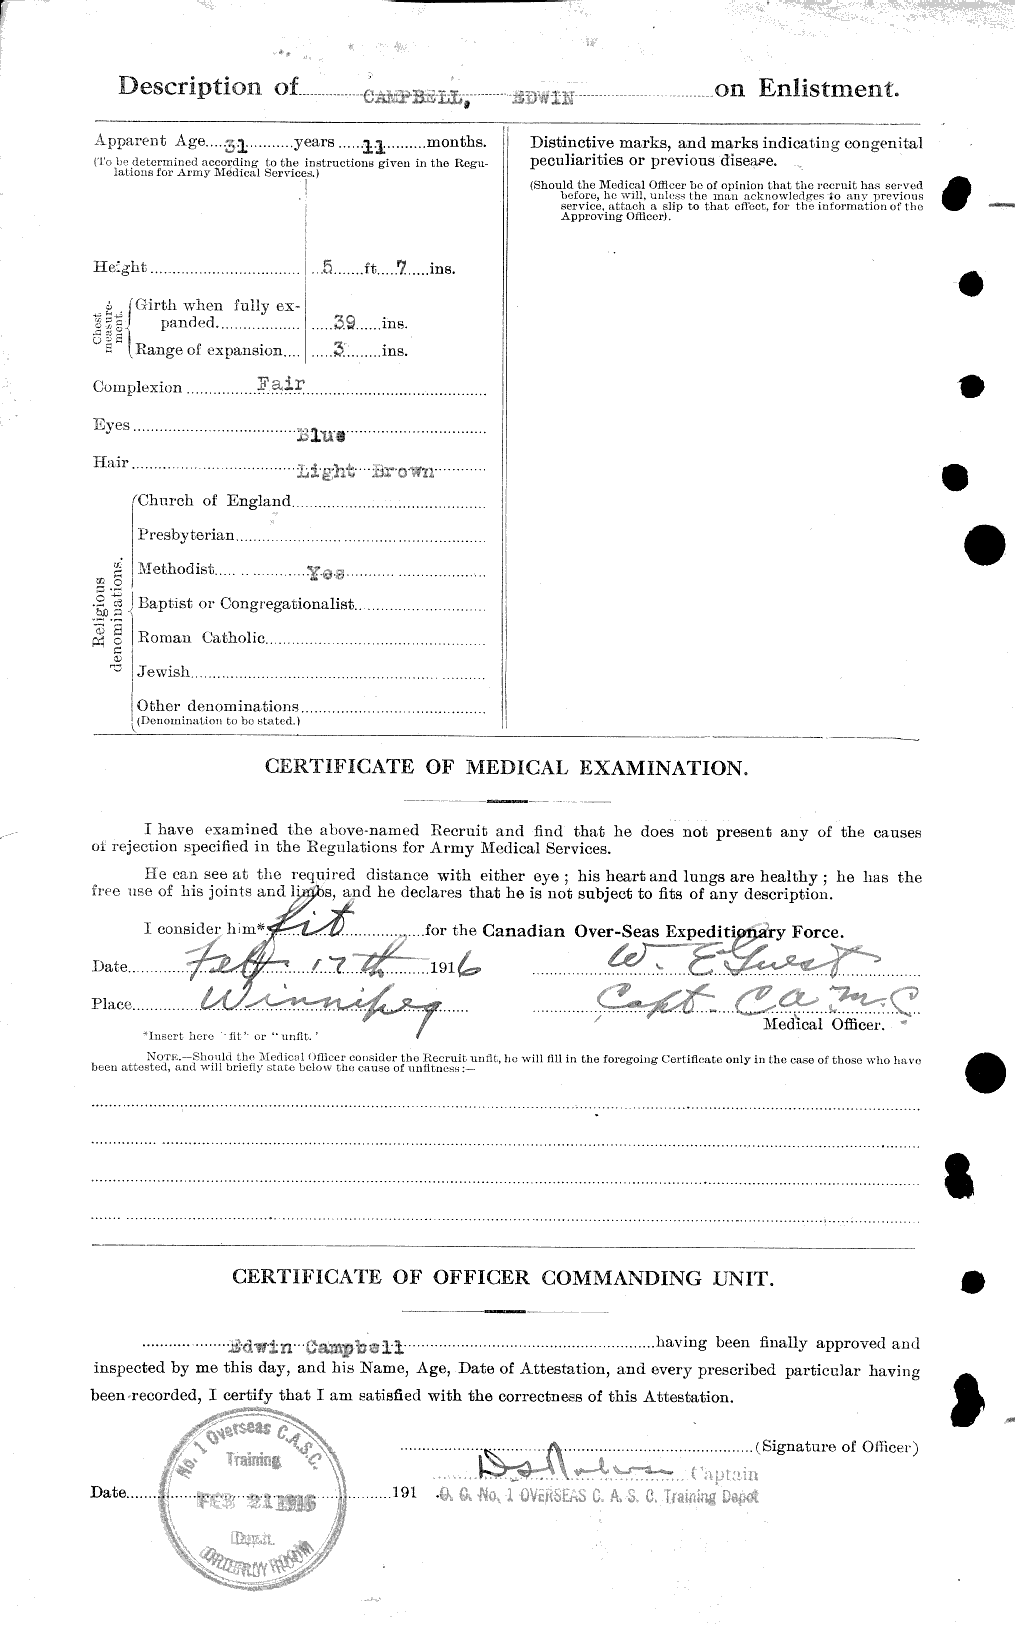 Dossiers du Personnel de la Première Guerre mondiale - CEC 003654b